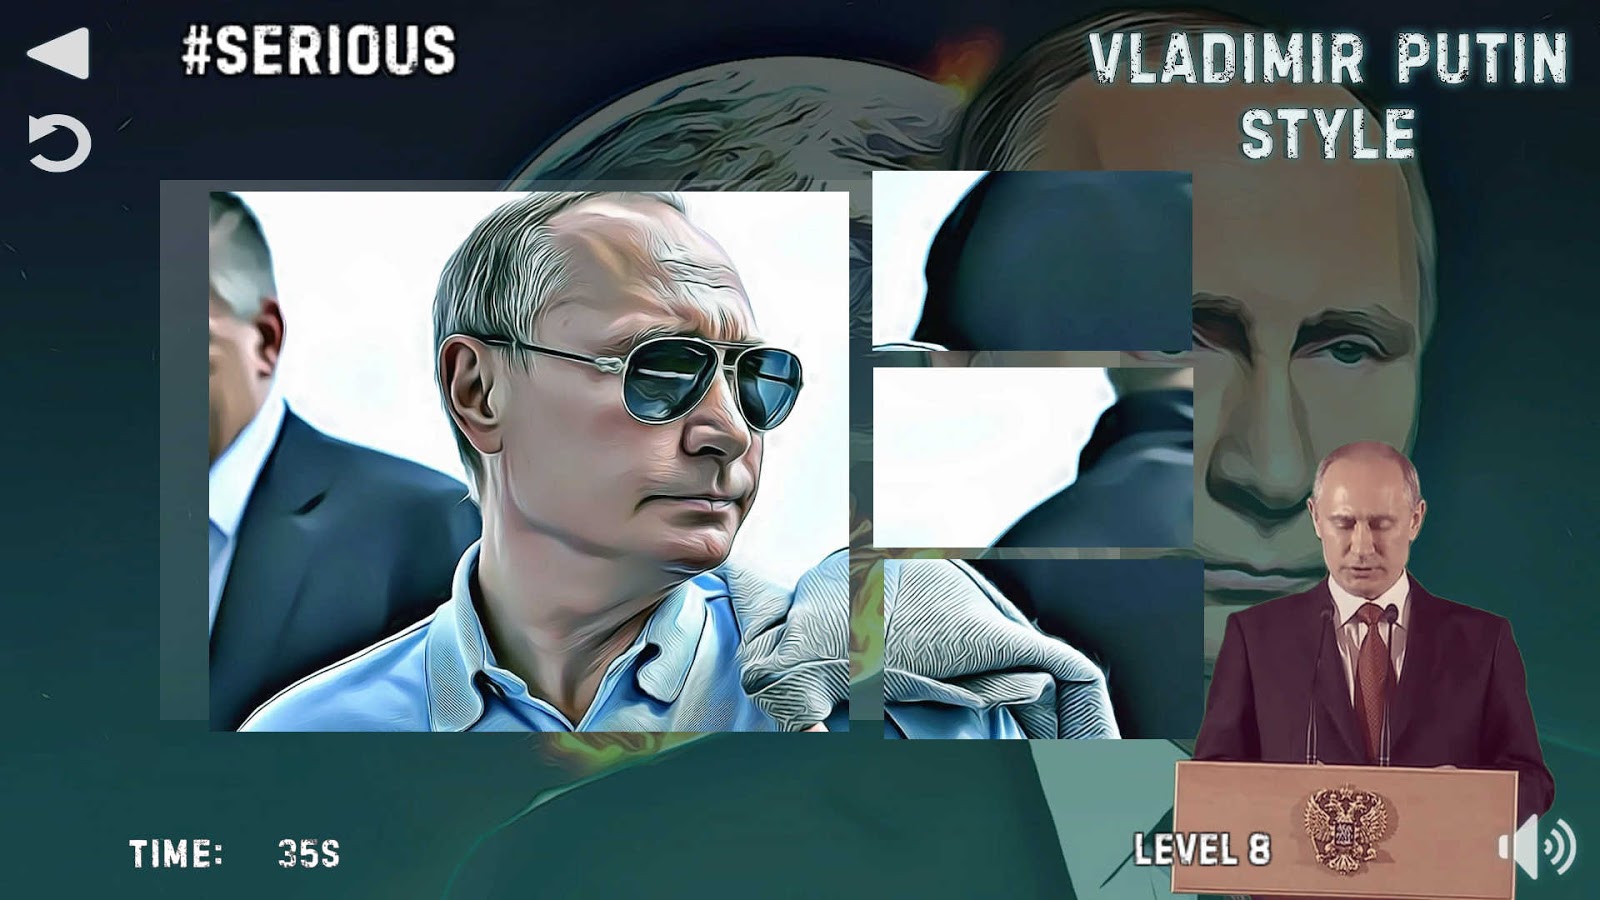 Vladimir Putin phong cách 1